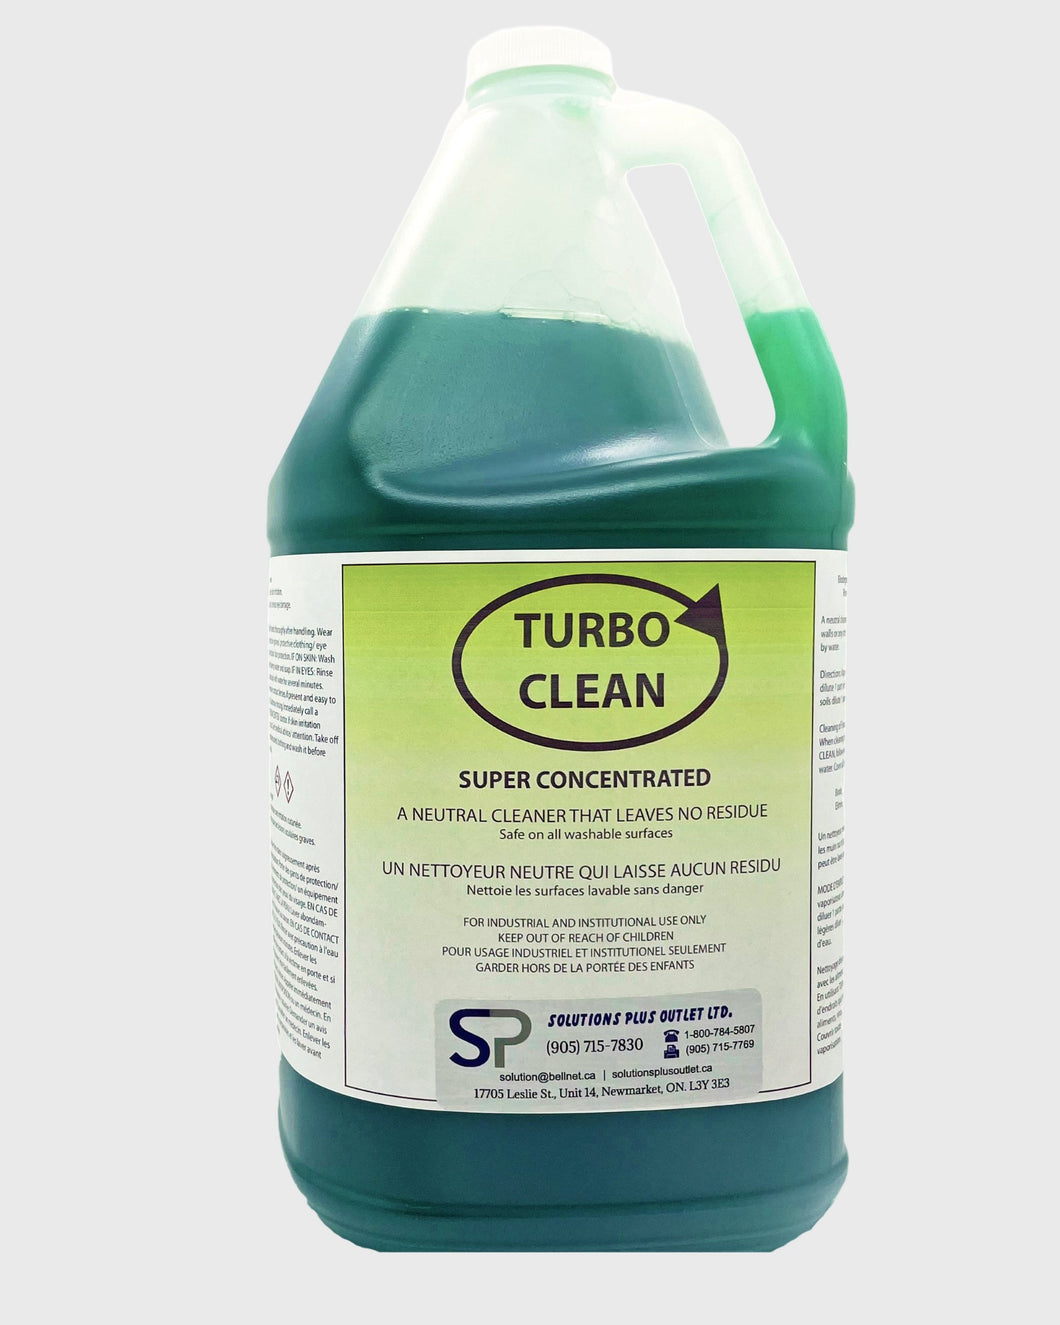 Turbo Clean – Solution Plus Outlet Ltd